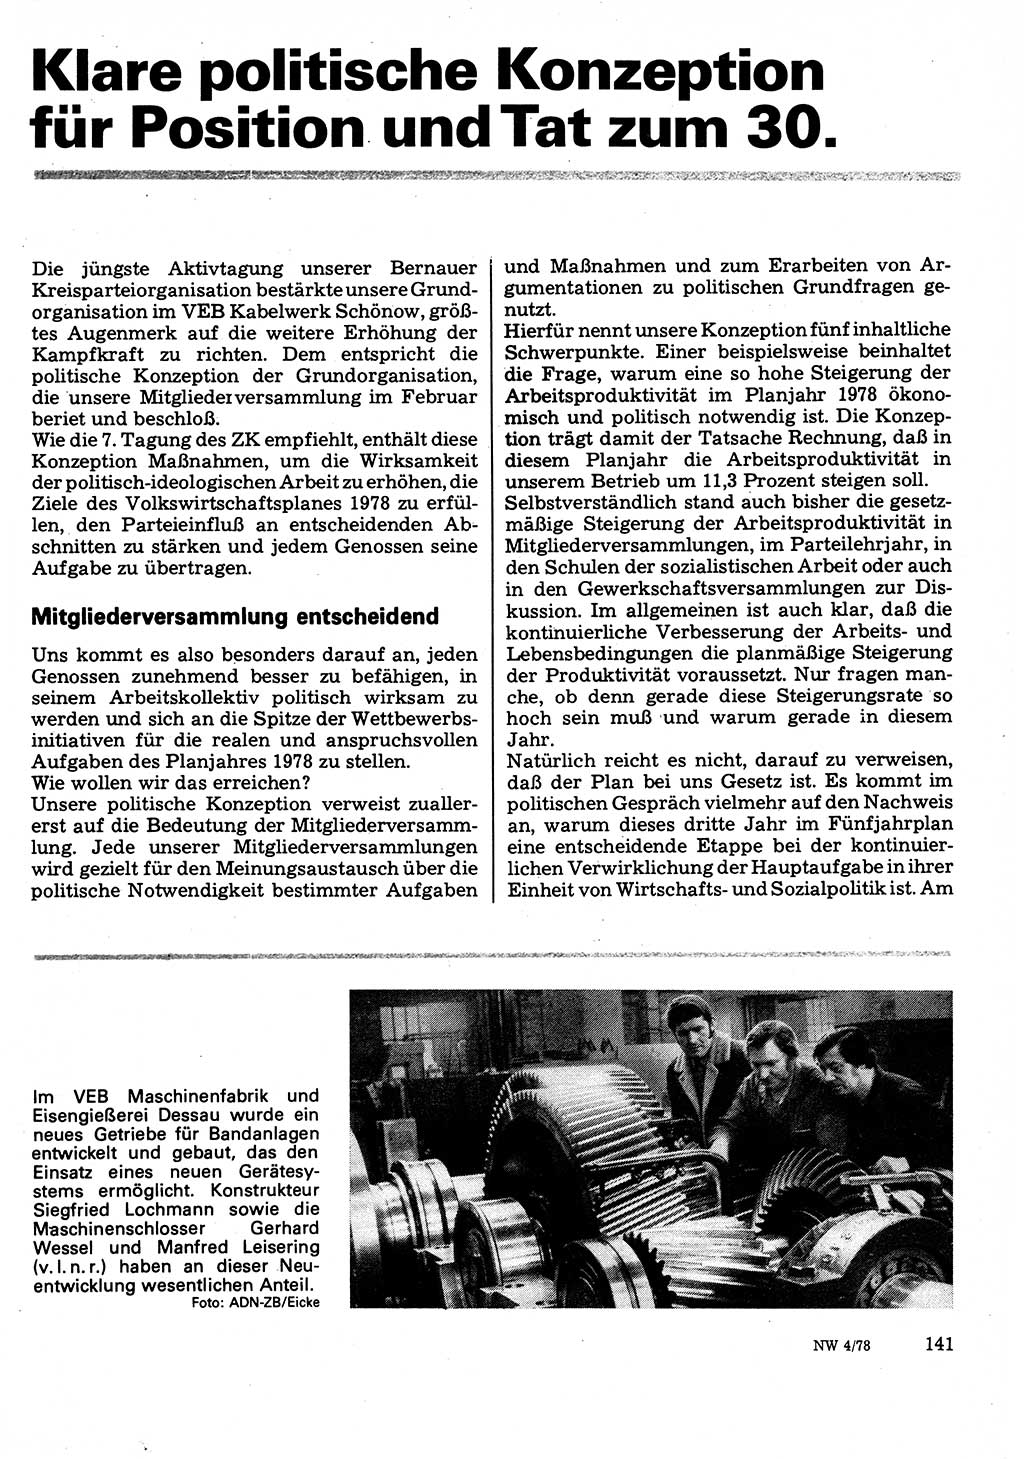 Neuer Weg (NW), Organ des Zentralkomitees (ZK) der SED (Sozialistische Einheitspartei Deutschlands) für Fragen des Parteilebens, 33. Jahrgang [Deutsche Demokratische Republik (DDR)] 1978, Seite 141 (NW ZK SED DDR 1978, S. 141)